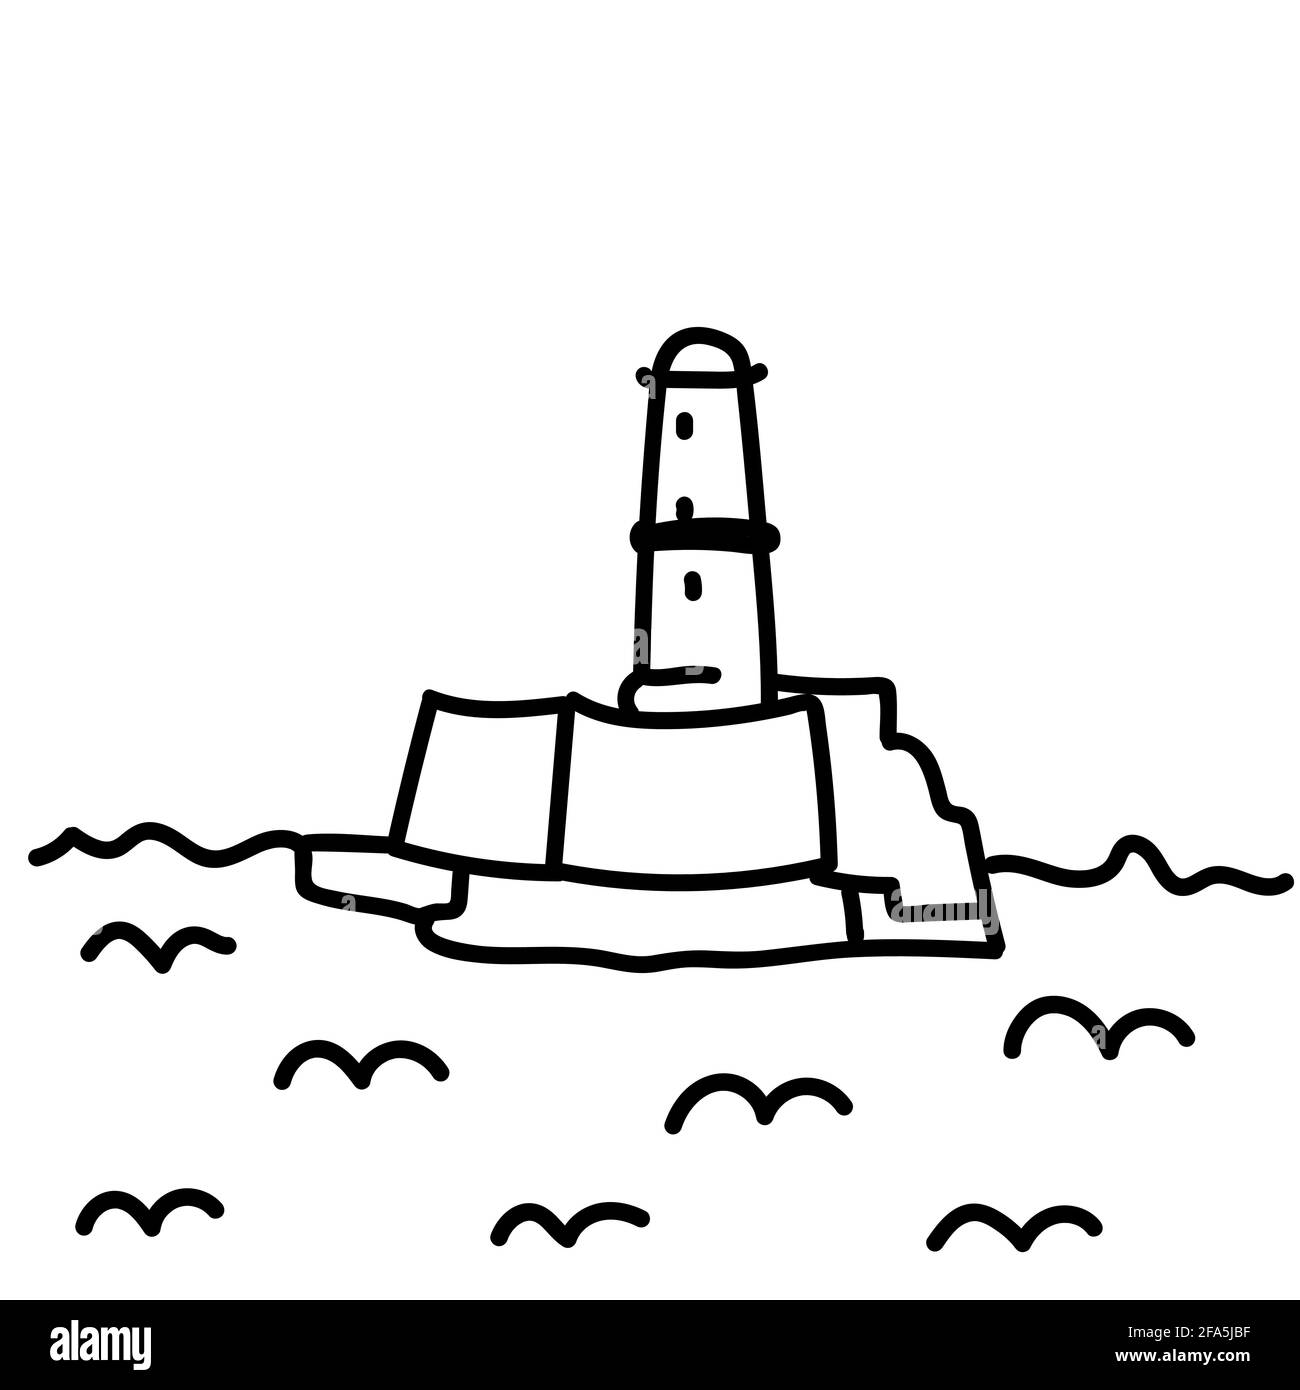 Festung Marseille Handgezeichnete Doodle-Vektor-Illustration isoliert auf dem Hintergrund. Einfache Zeichnungen mit schwarzer Farbe. Stock Vektor